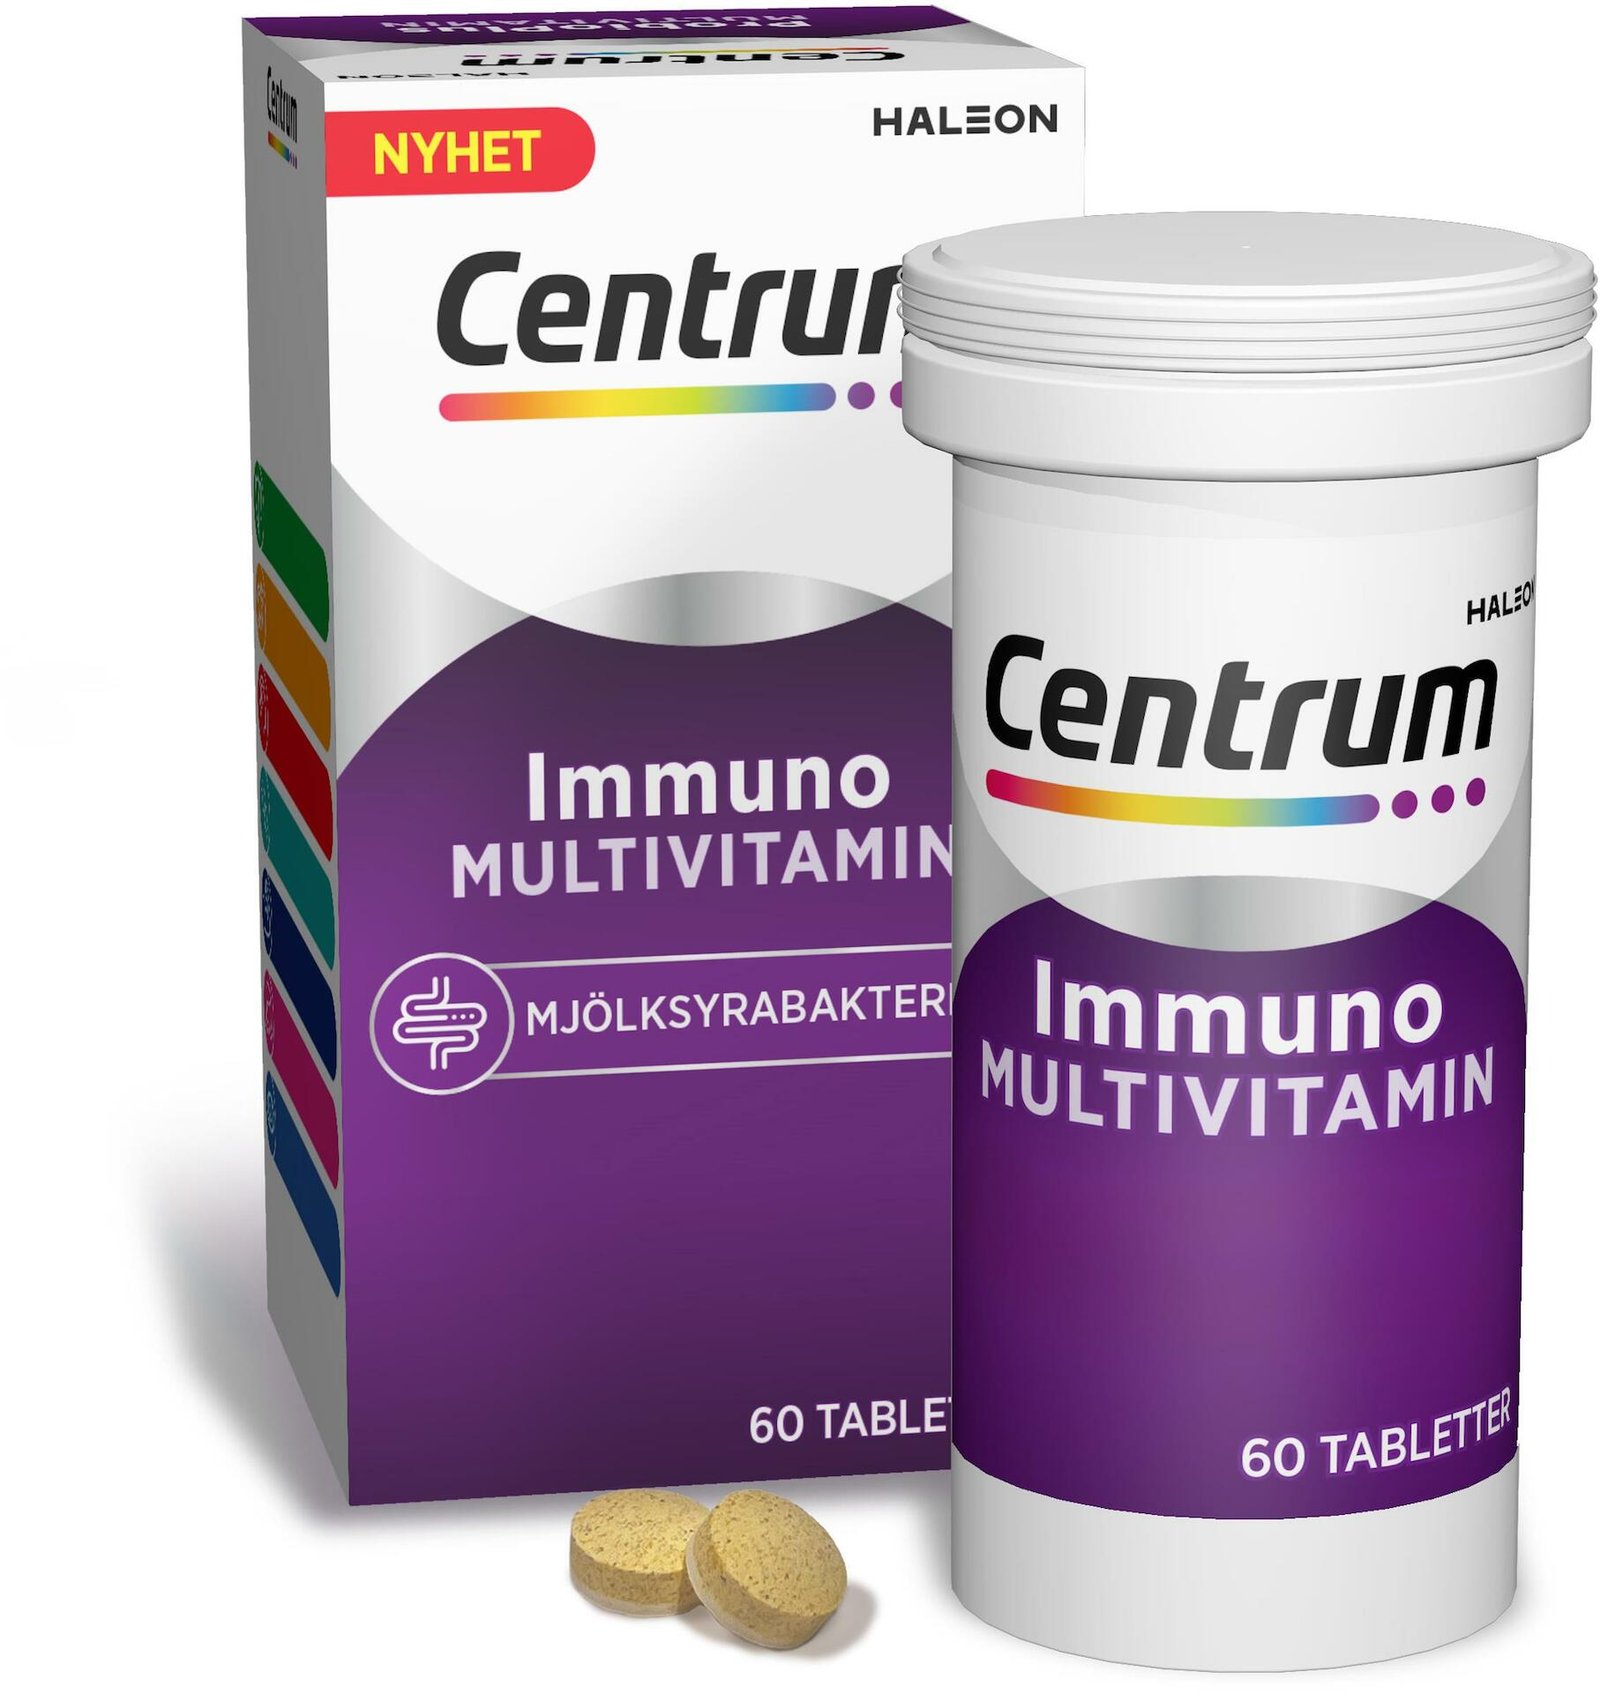 Centrum Immuno Multivitamin & Mjölksyrabakterier 60 tabletter